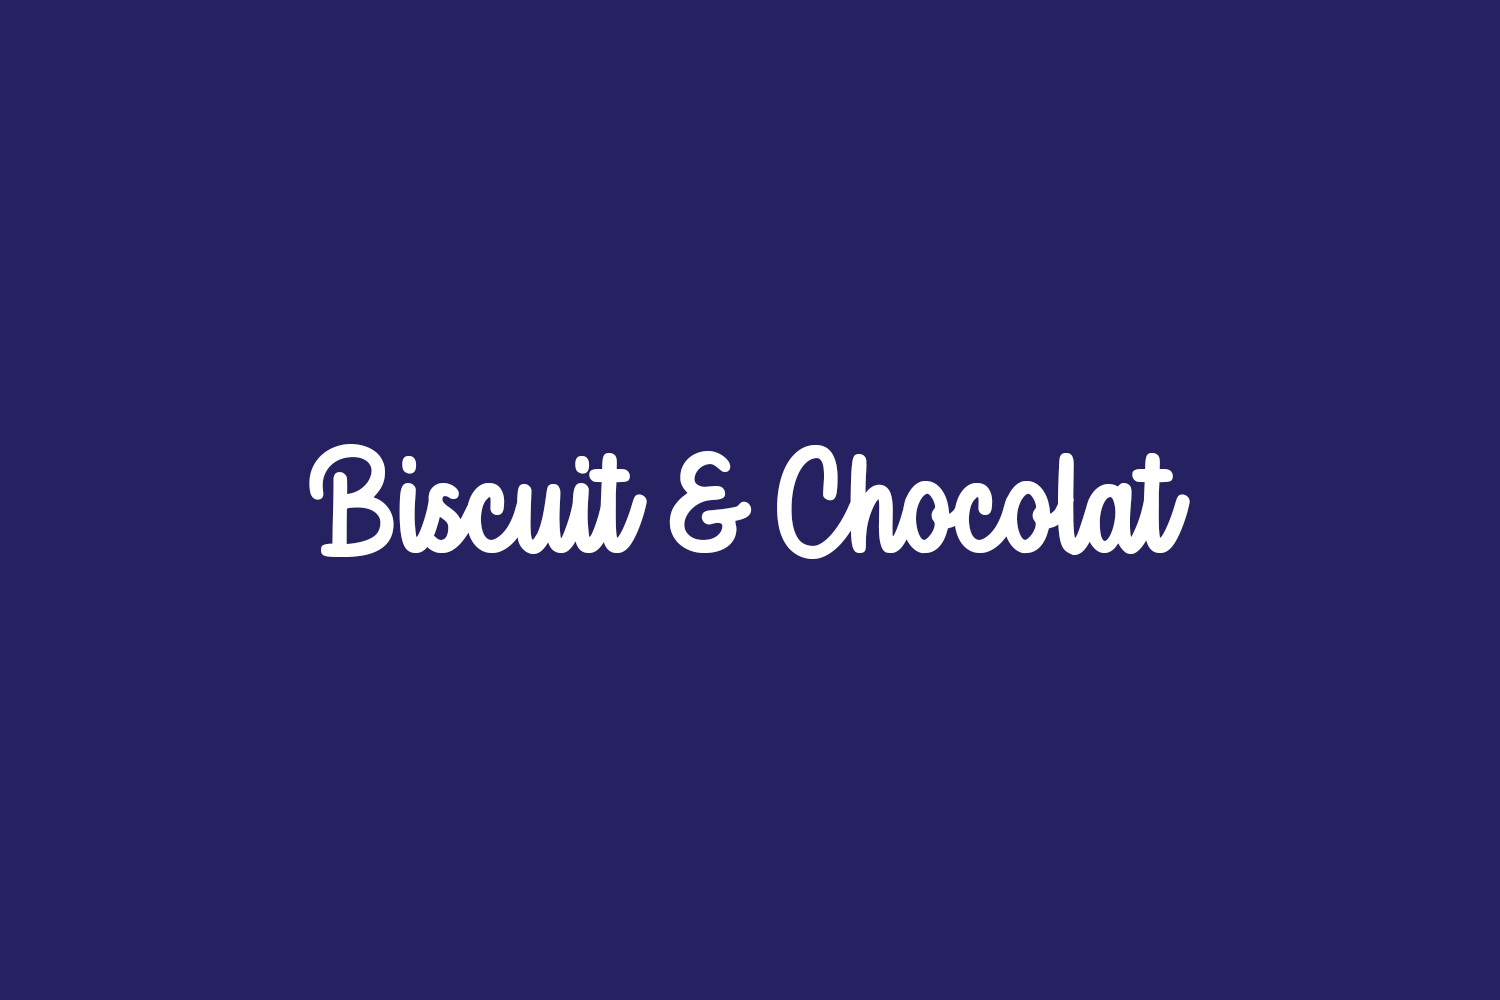 Biscuit & Chocolat Free Font